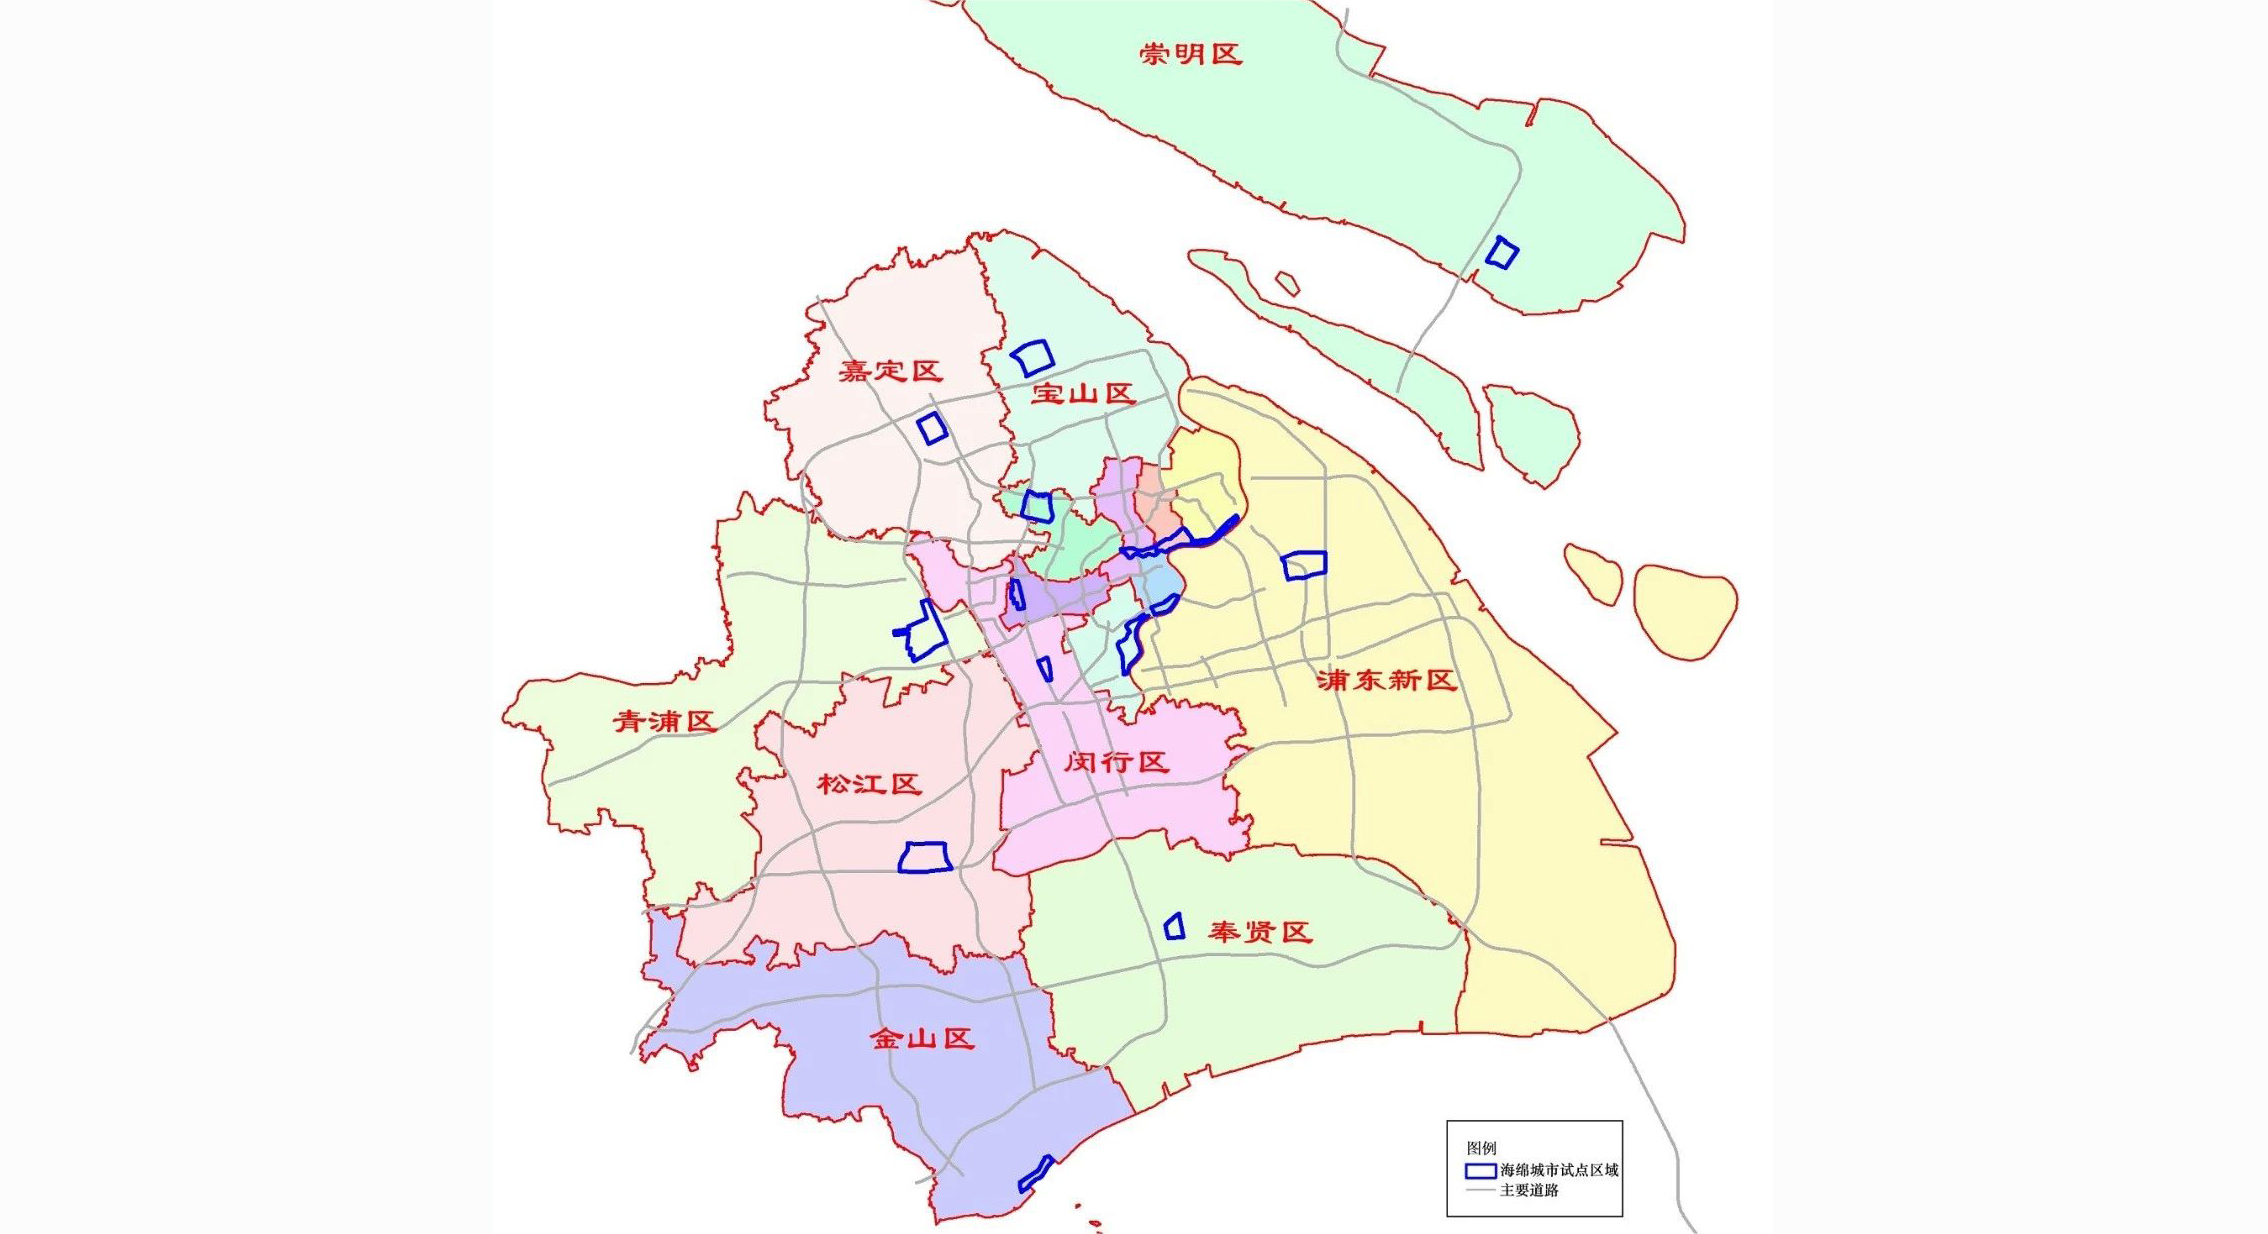 上海正式发布16个市级海绵城市建设试点区